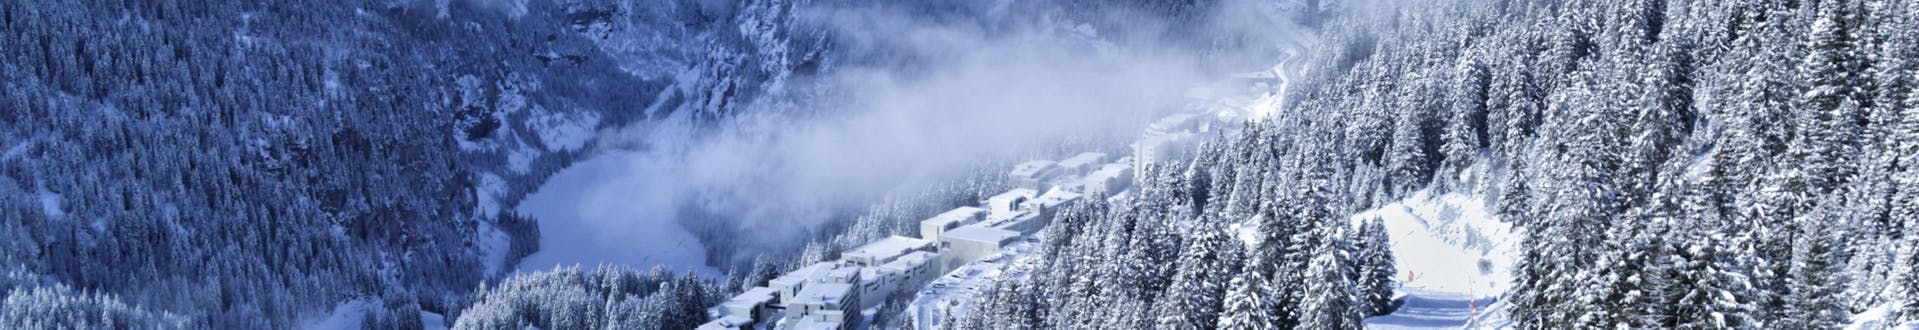 Ein Blick über die verschneite Winterlandschaft im Skigebiet Flaine, wo örtliche Skischulen ihre Skikurse durchführen.